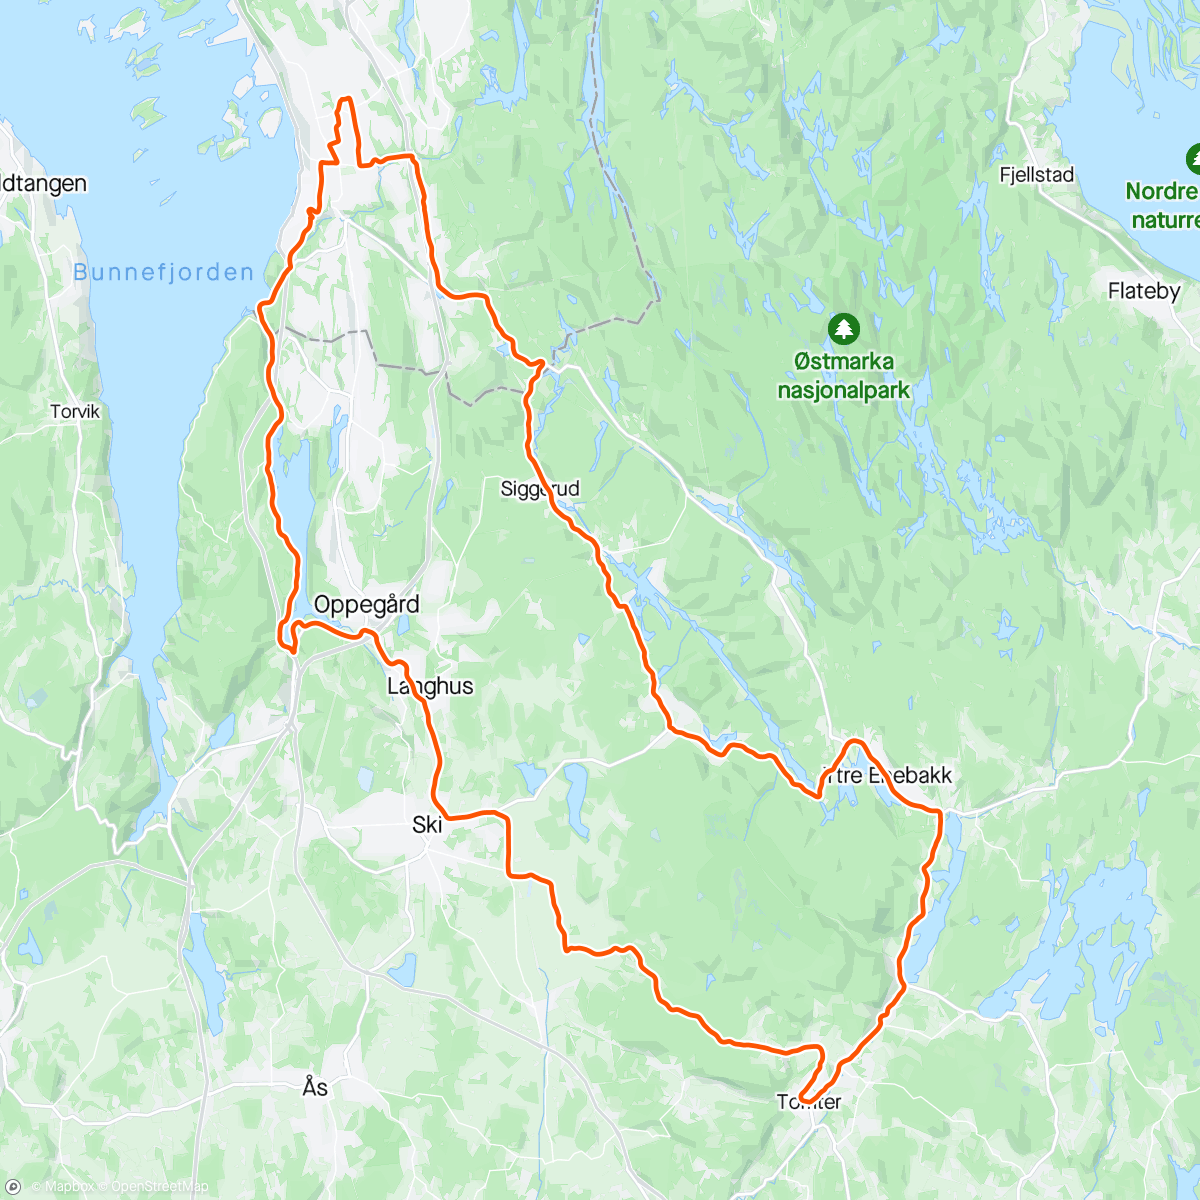 Mapa da atividade, Enebakk, Tomter, Mosseveien og hjem ☀️🤗